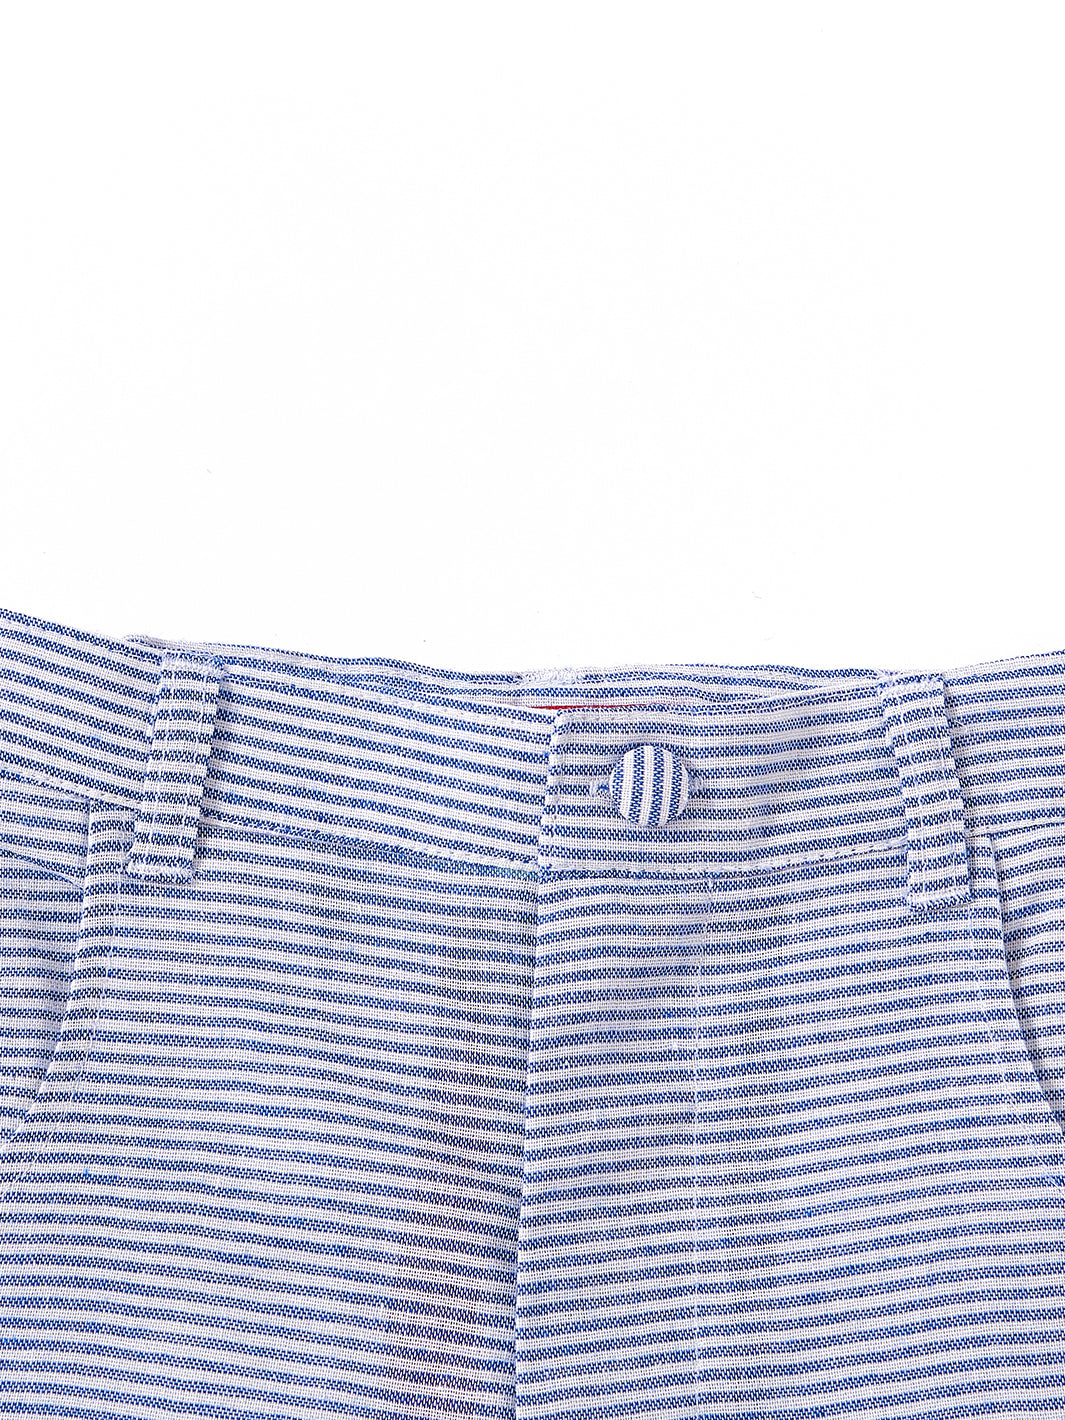 Linen Striped Short Pants - Blue